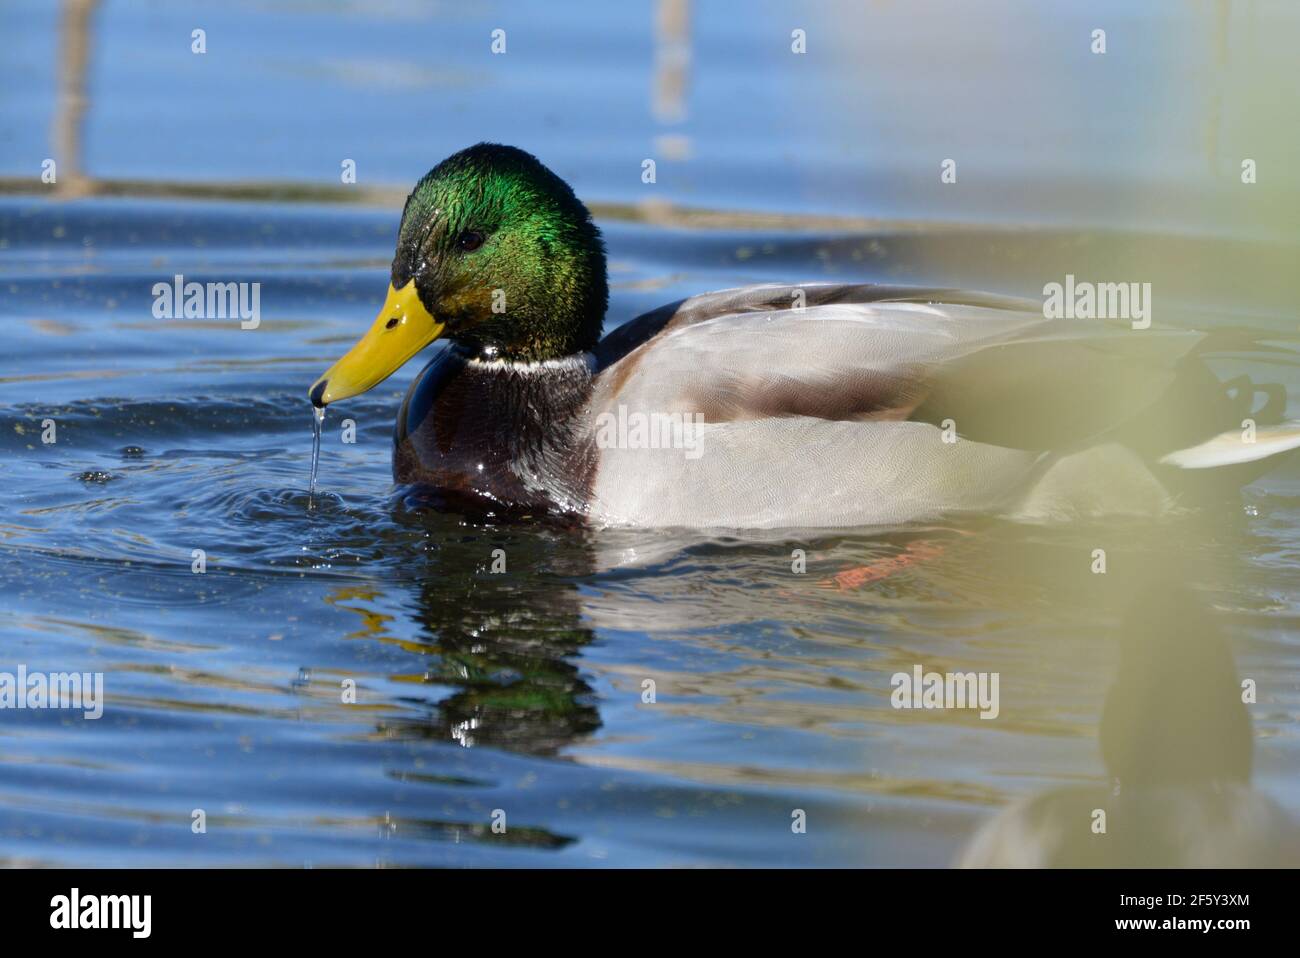 Mallard Ente taumelnd in der Nähe tropfende Wasser von seinem Bill. Stockfoto